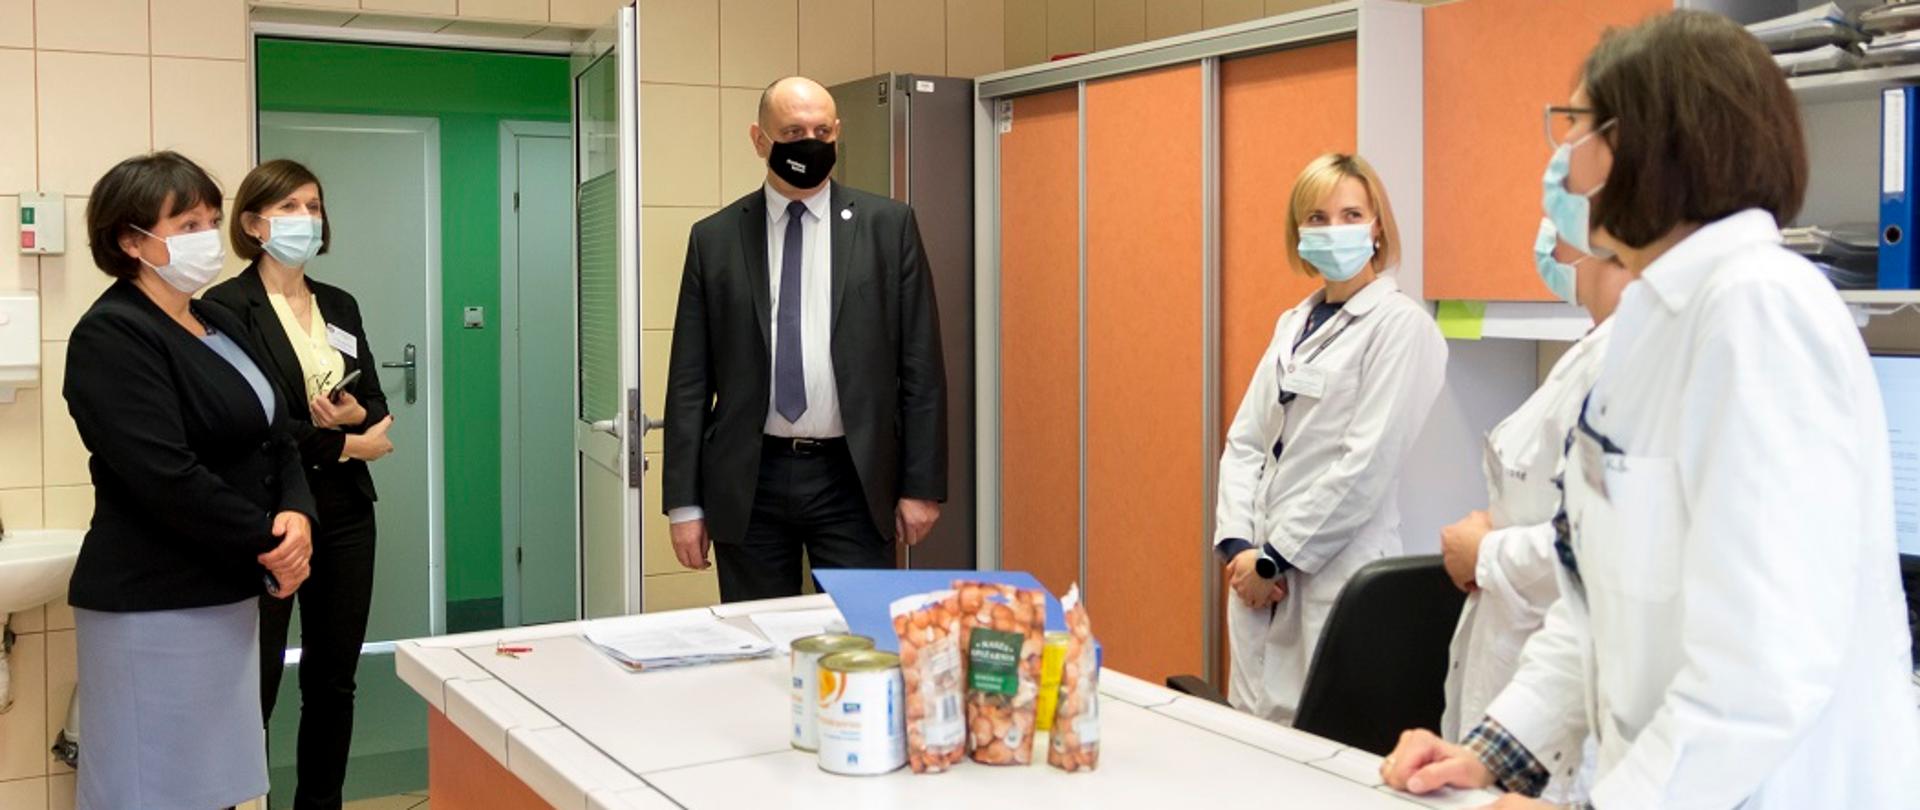 Wizyta Głównego Inspektora Sanitarnego w Wojewódzkiej Stacji Sanitarno-Epidemiologicznej w Opolu